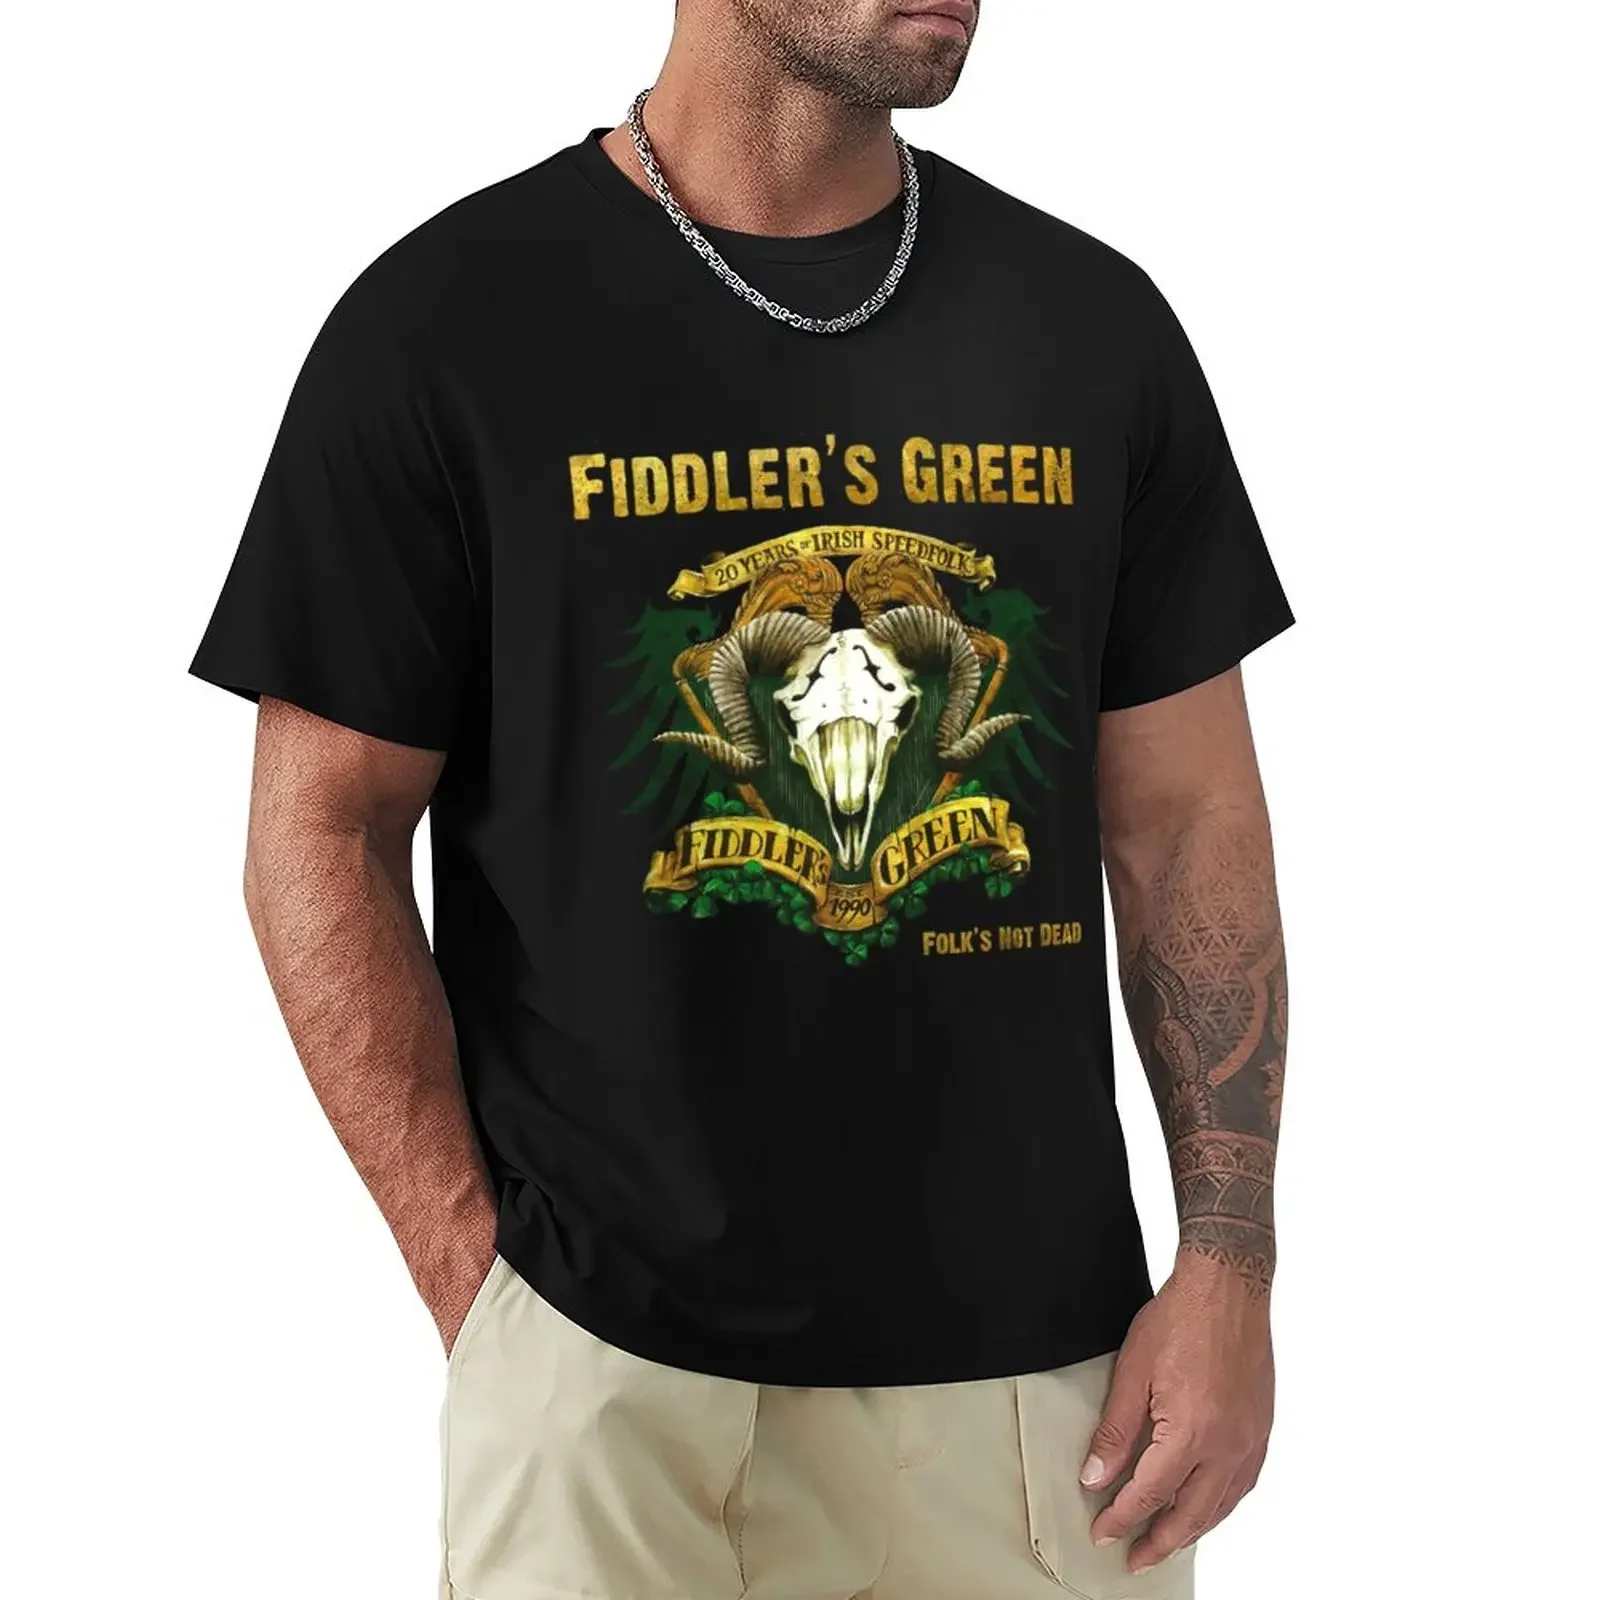 

Футболка est 1990 fiddler's зеленая без аниме графика быстросохнущая мужская одежда